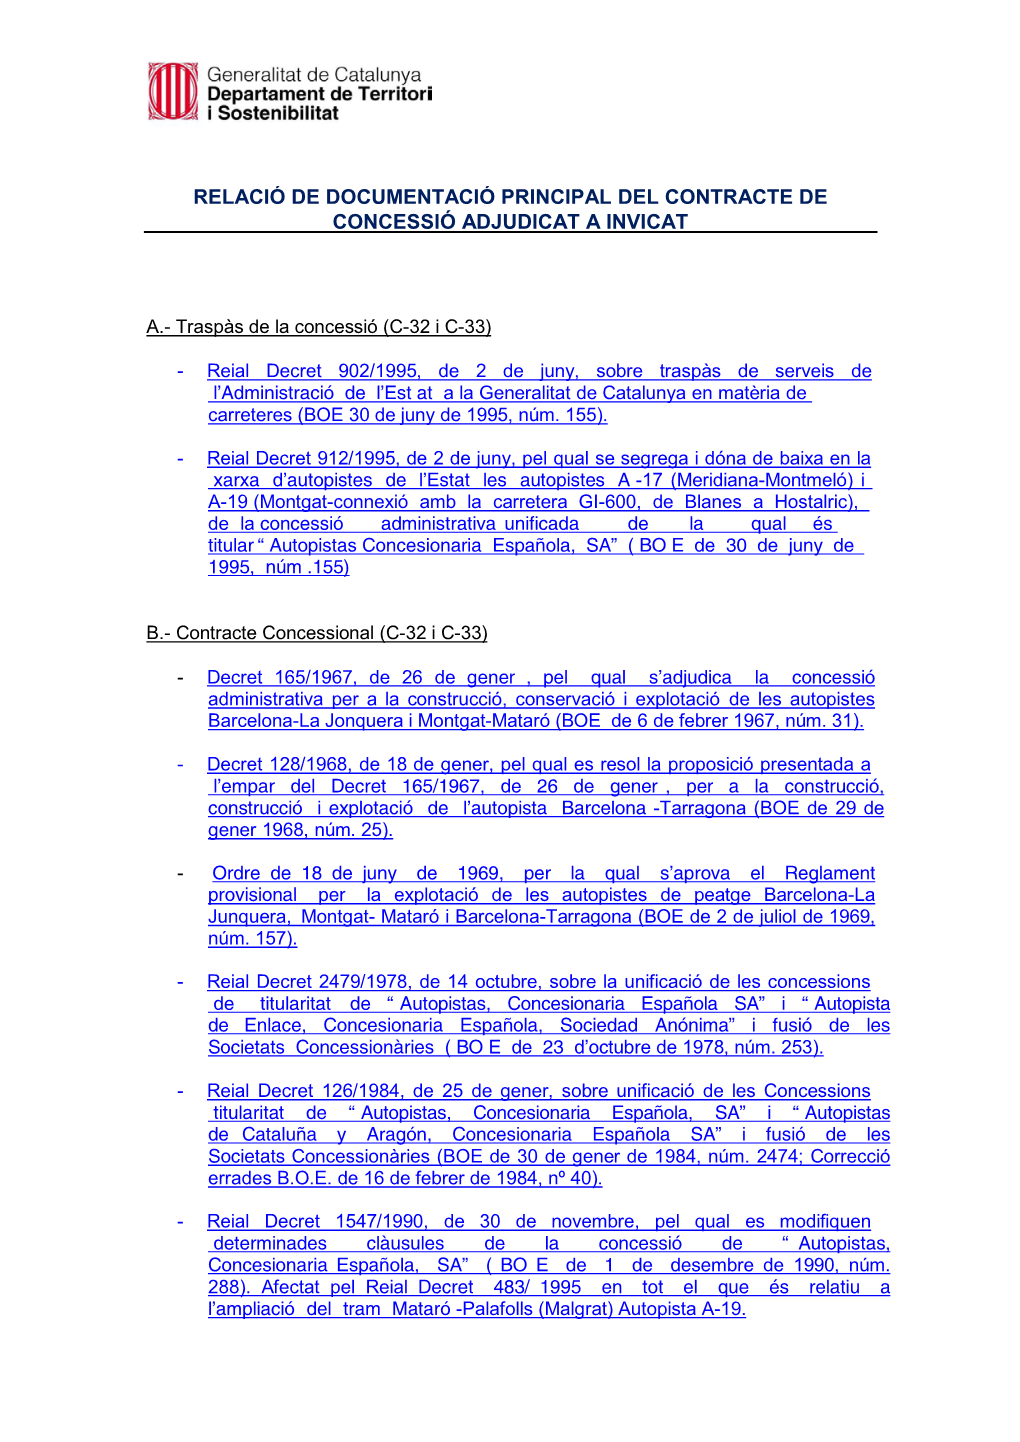 Relació De Documentació Principal Del Contracte De Concessió Adjudicat a Invicat